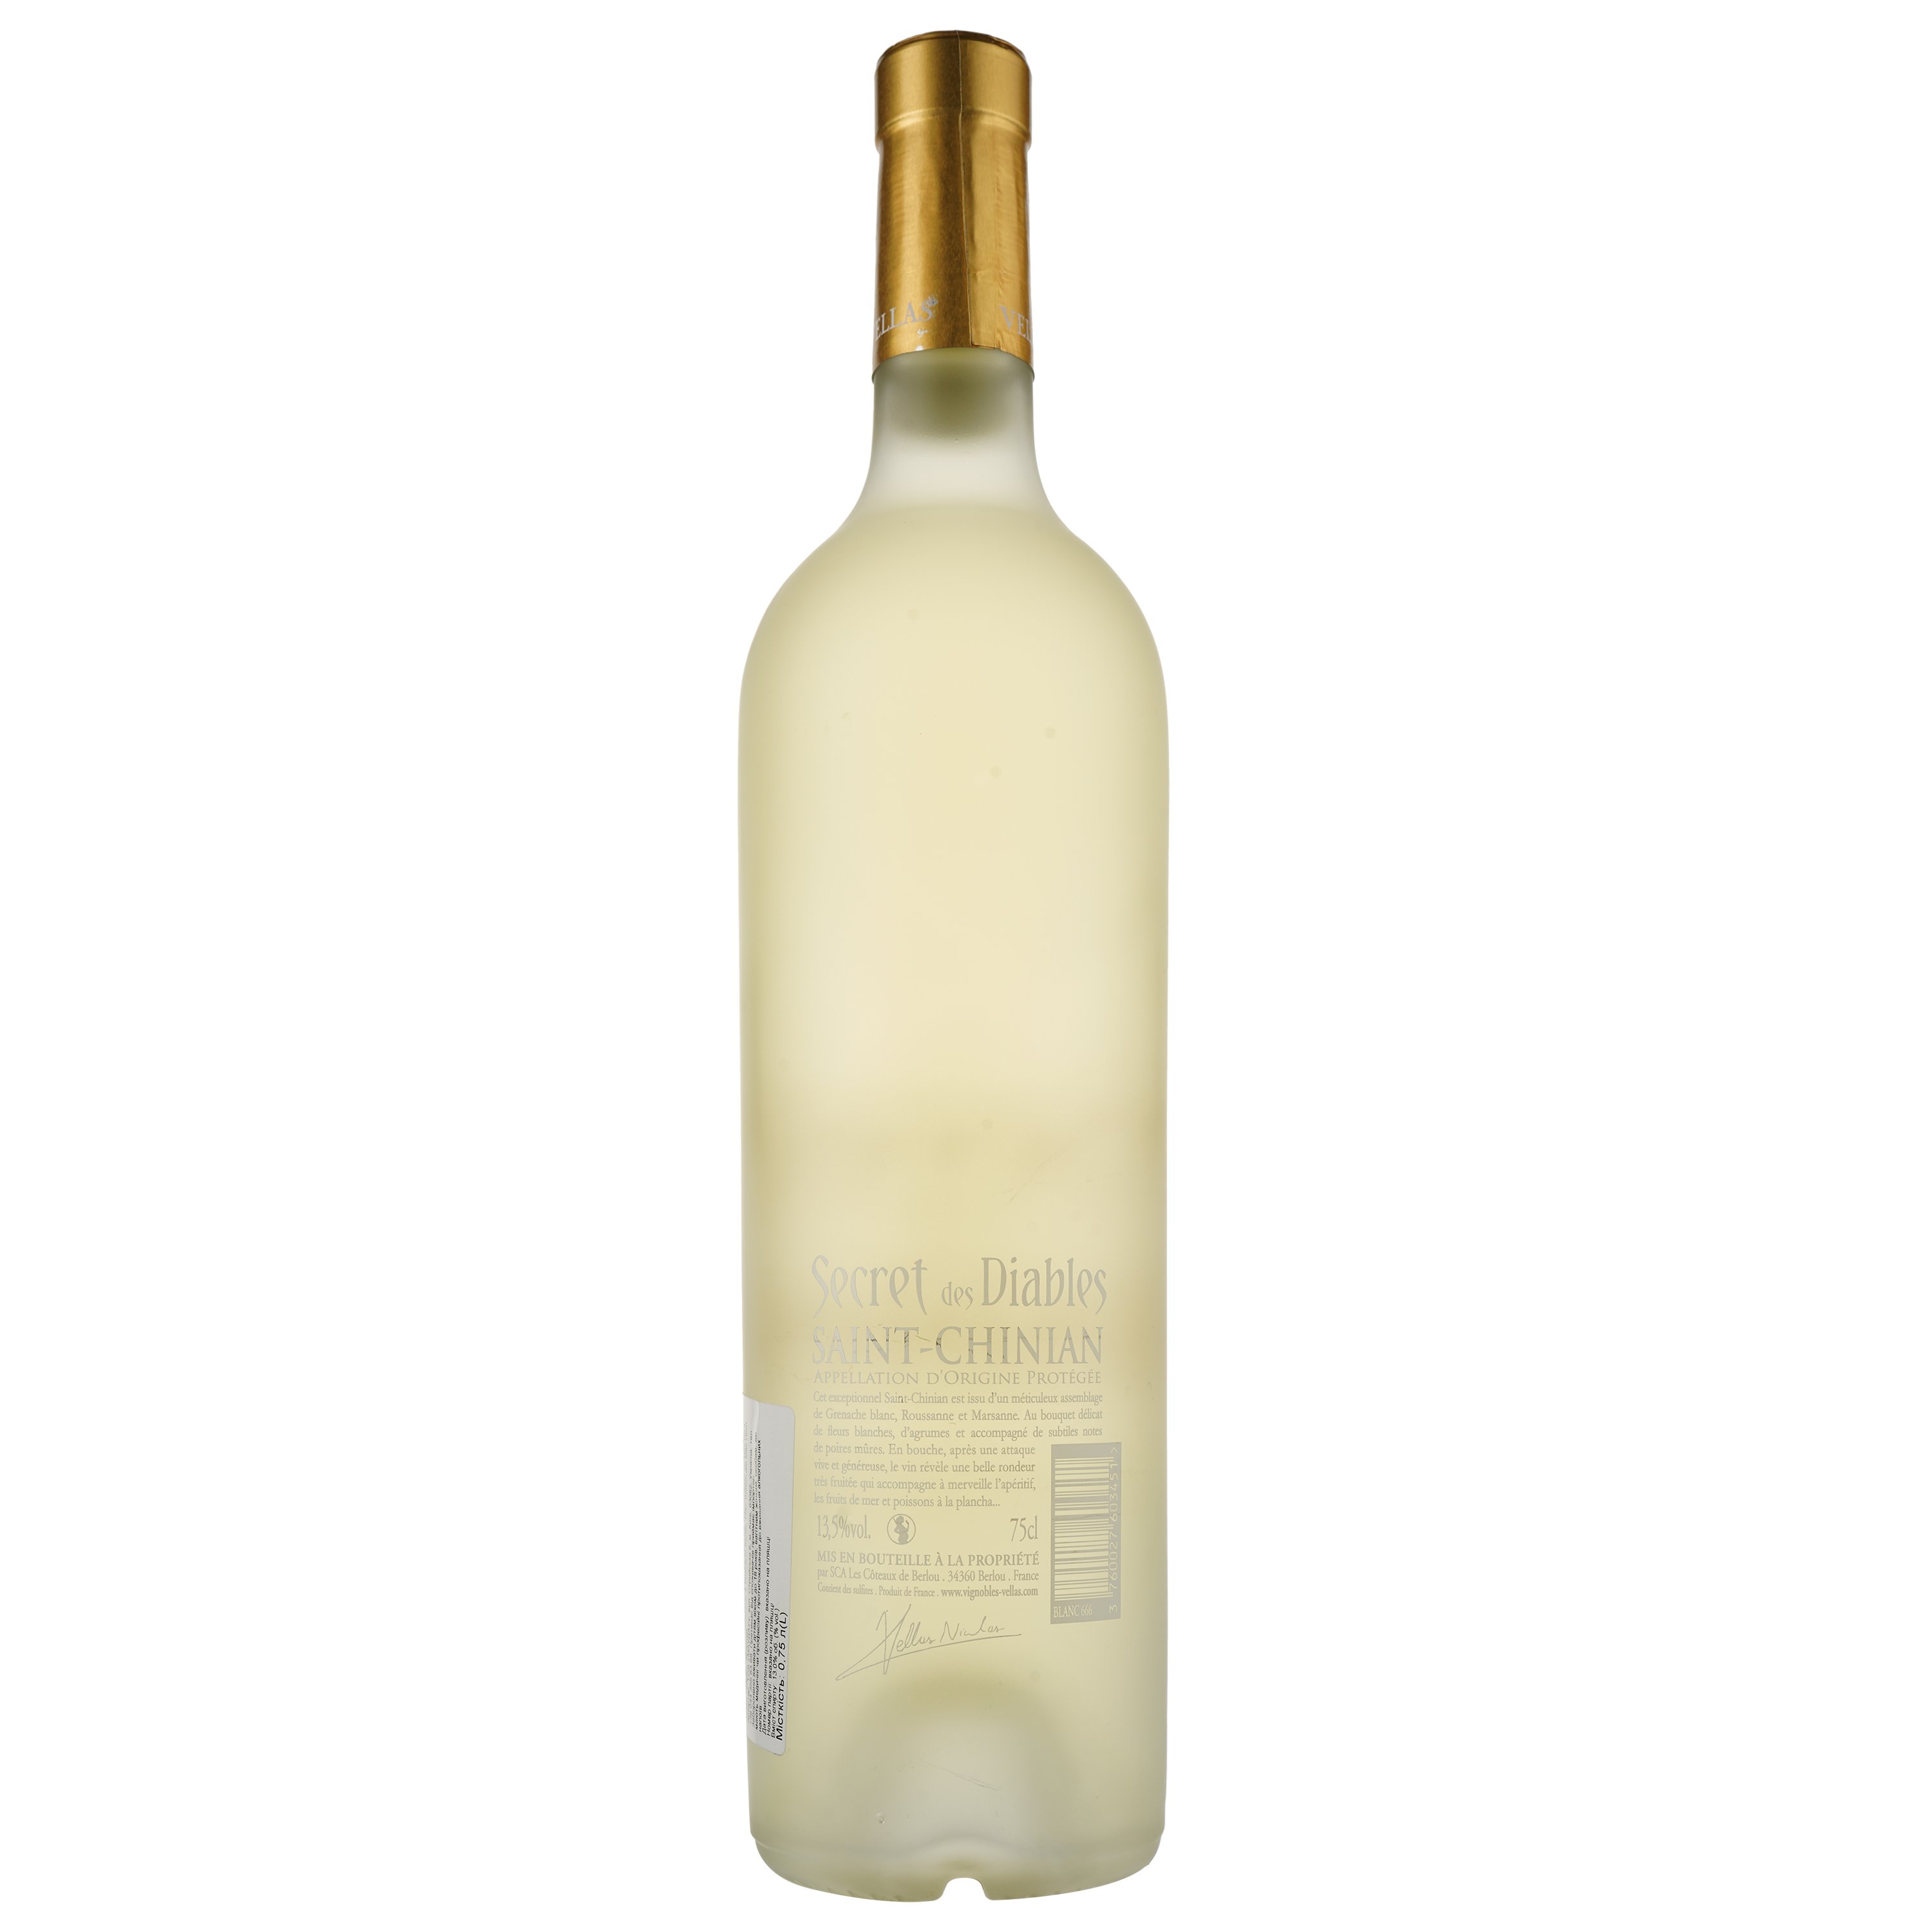 Вино Secret Des Diables Blanc AOP Saint Chinian, белое, сухое, 0.75 л - фото 2